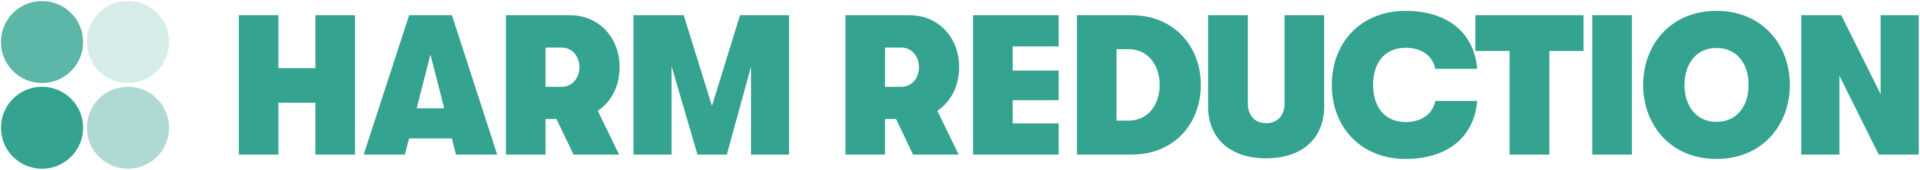 Harm_Reduction_Portal_Logo_RGB